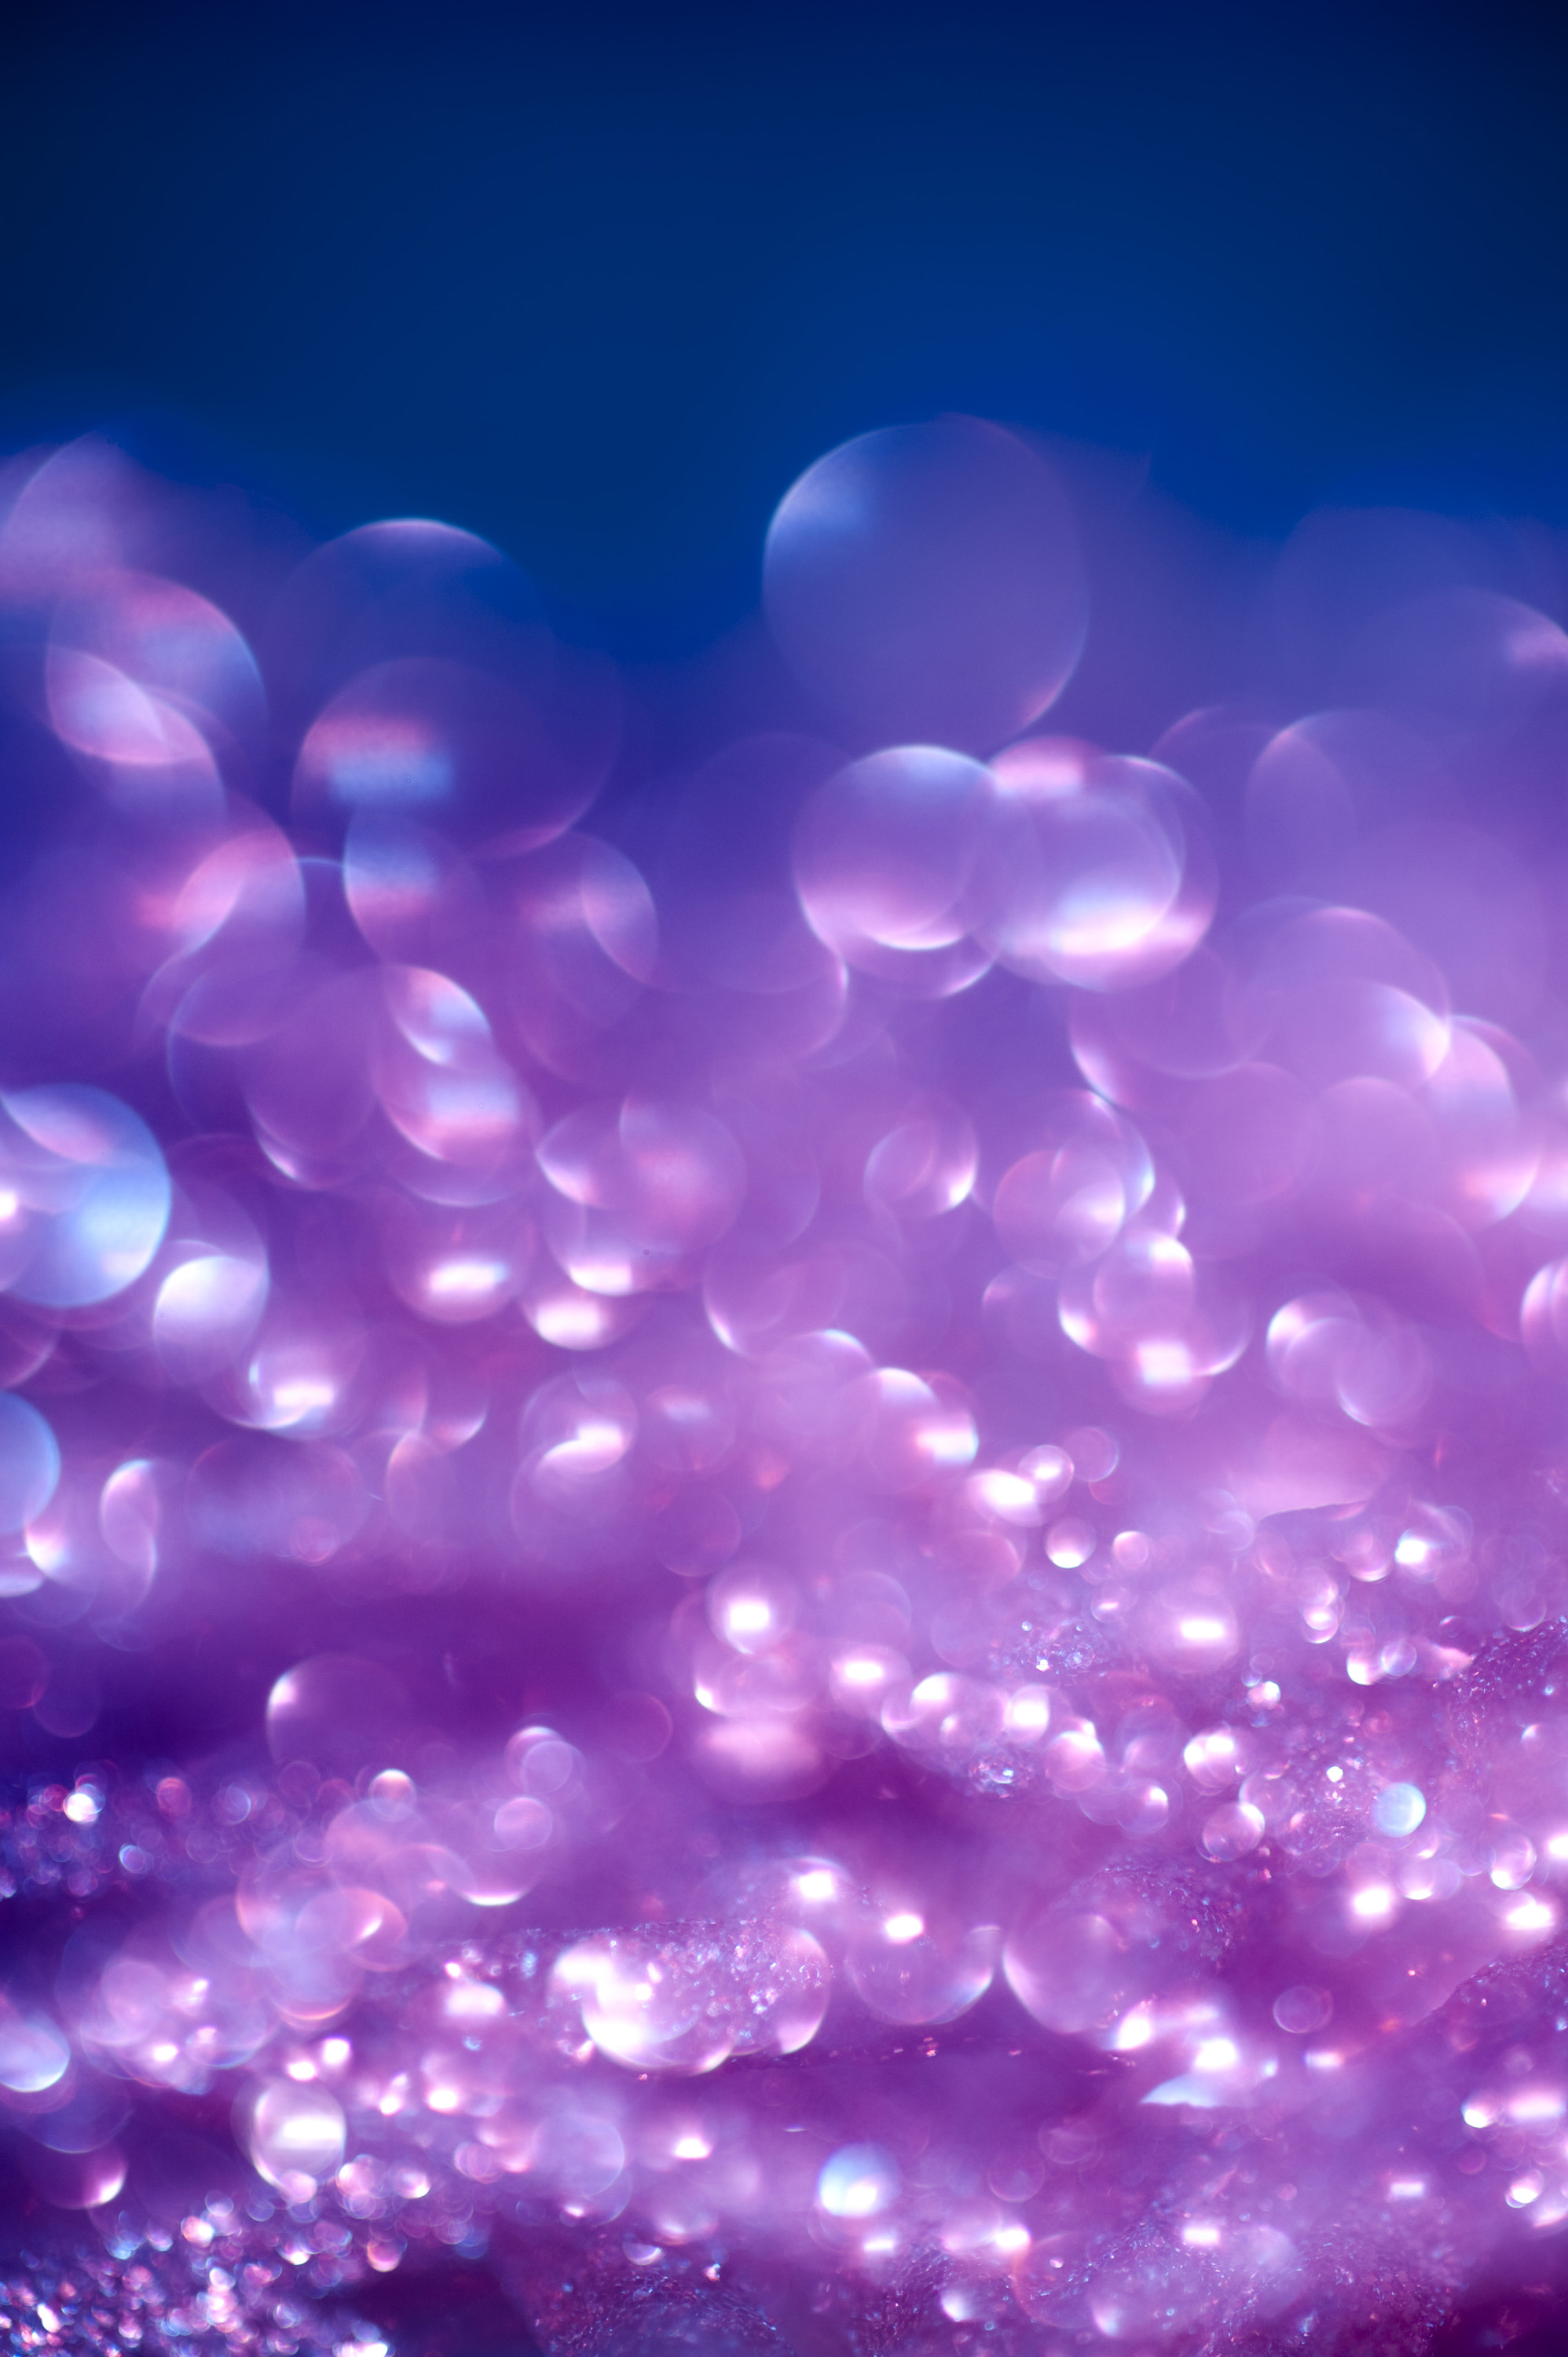 purple_glitter_bokeh: purple_glitter_bokeh